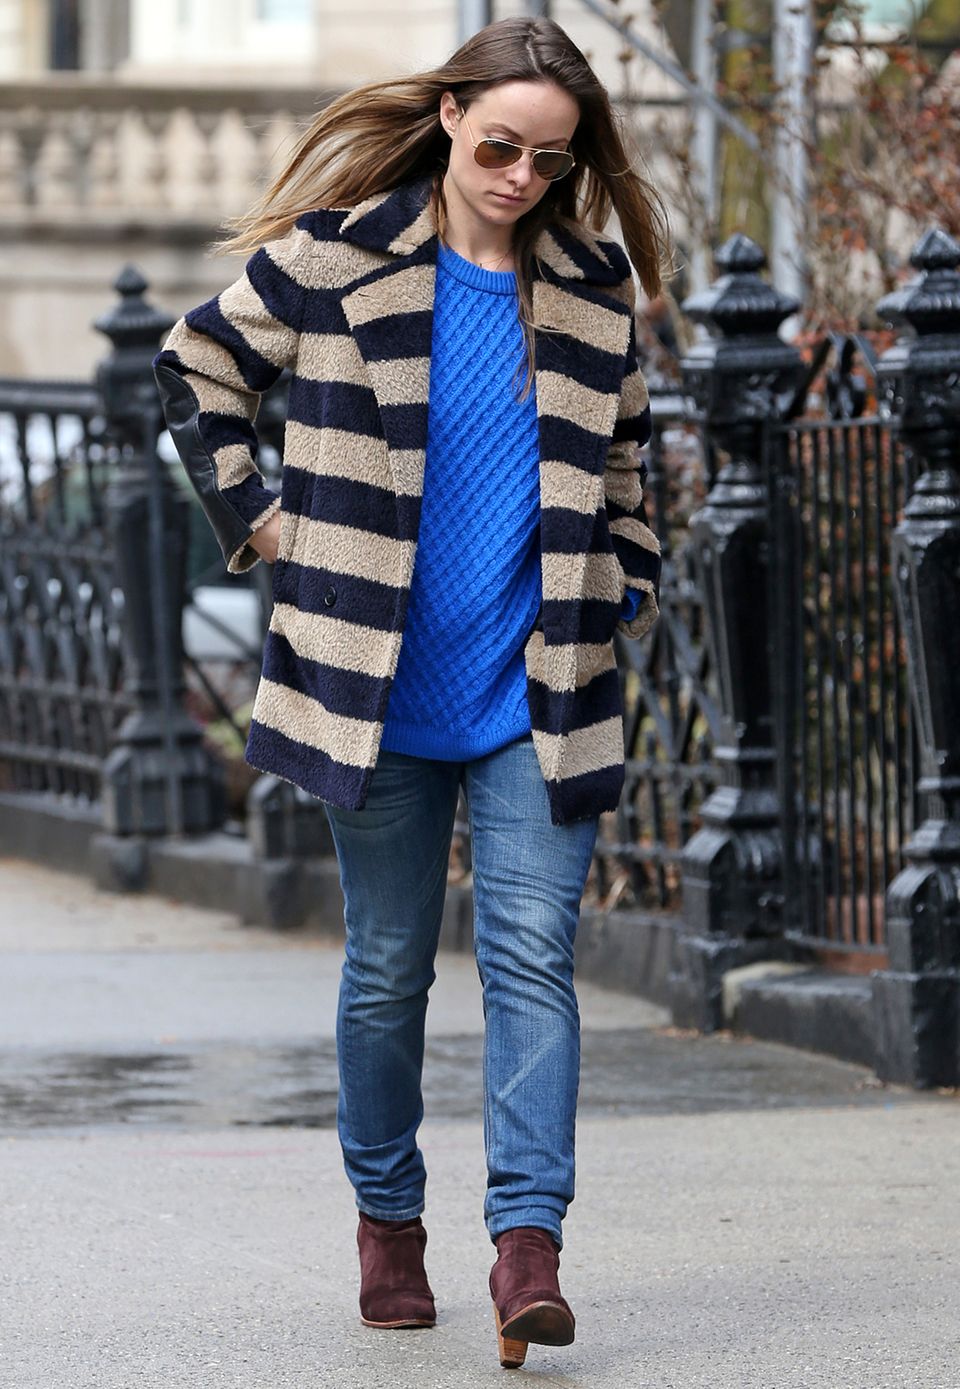 Jeans, Streifen, Knallfarbe - fertig ist der gemütliche Streetstyle von Olivia Wilde., der sich super einfach nachstylen lässt.